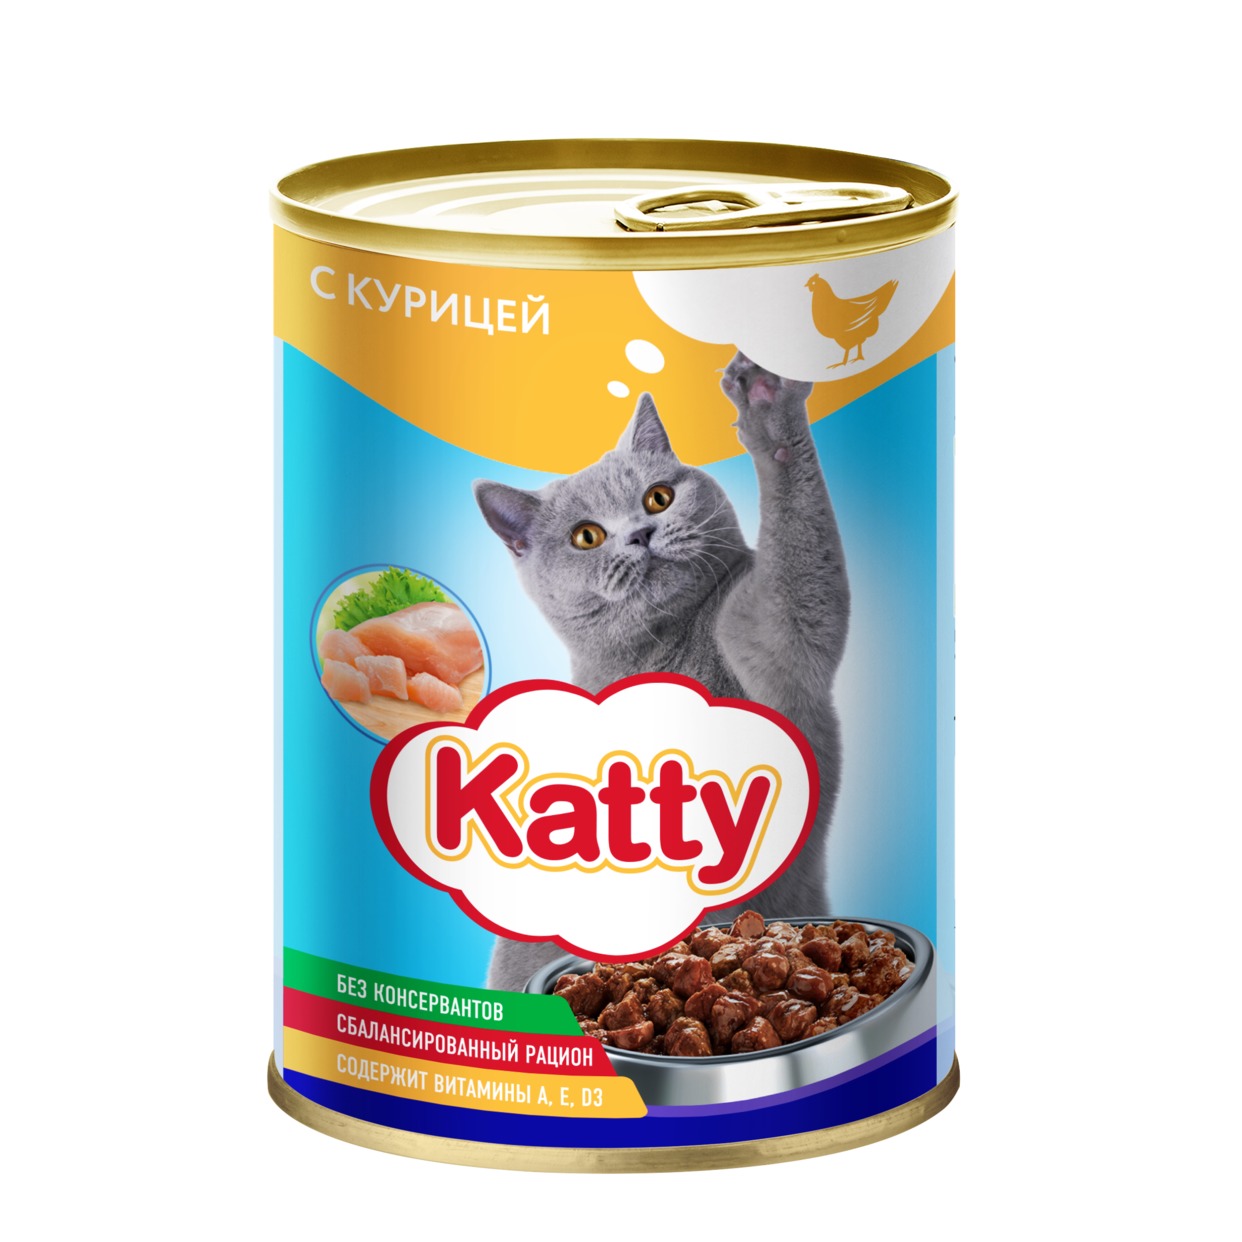 Katty Корм консервированный полнорационный для кошек с курицей в соусе, ж/б 415 гр. по акции в Пятерочке